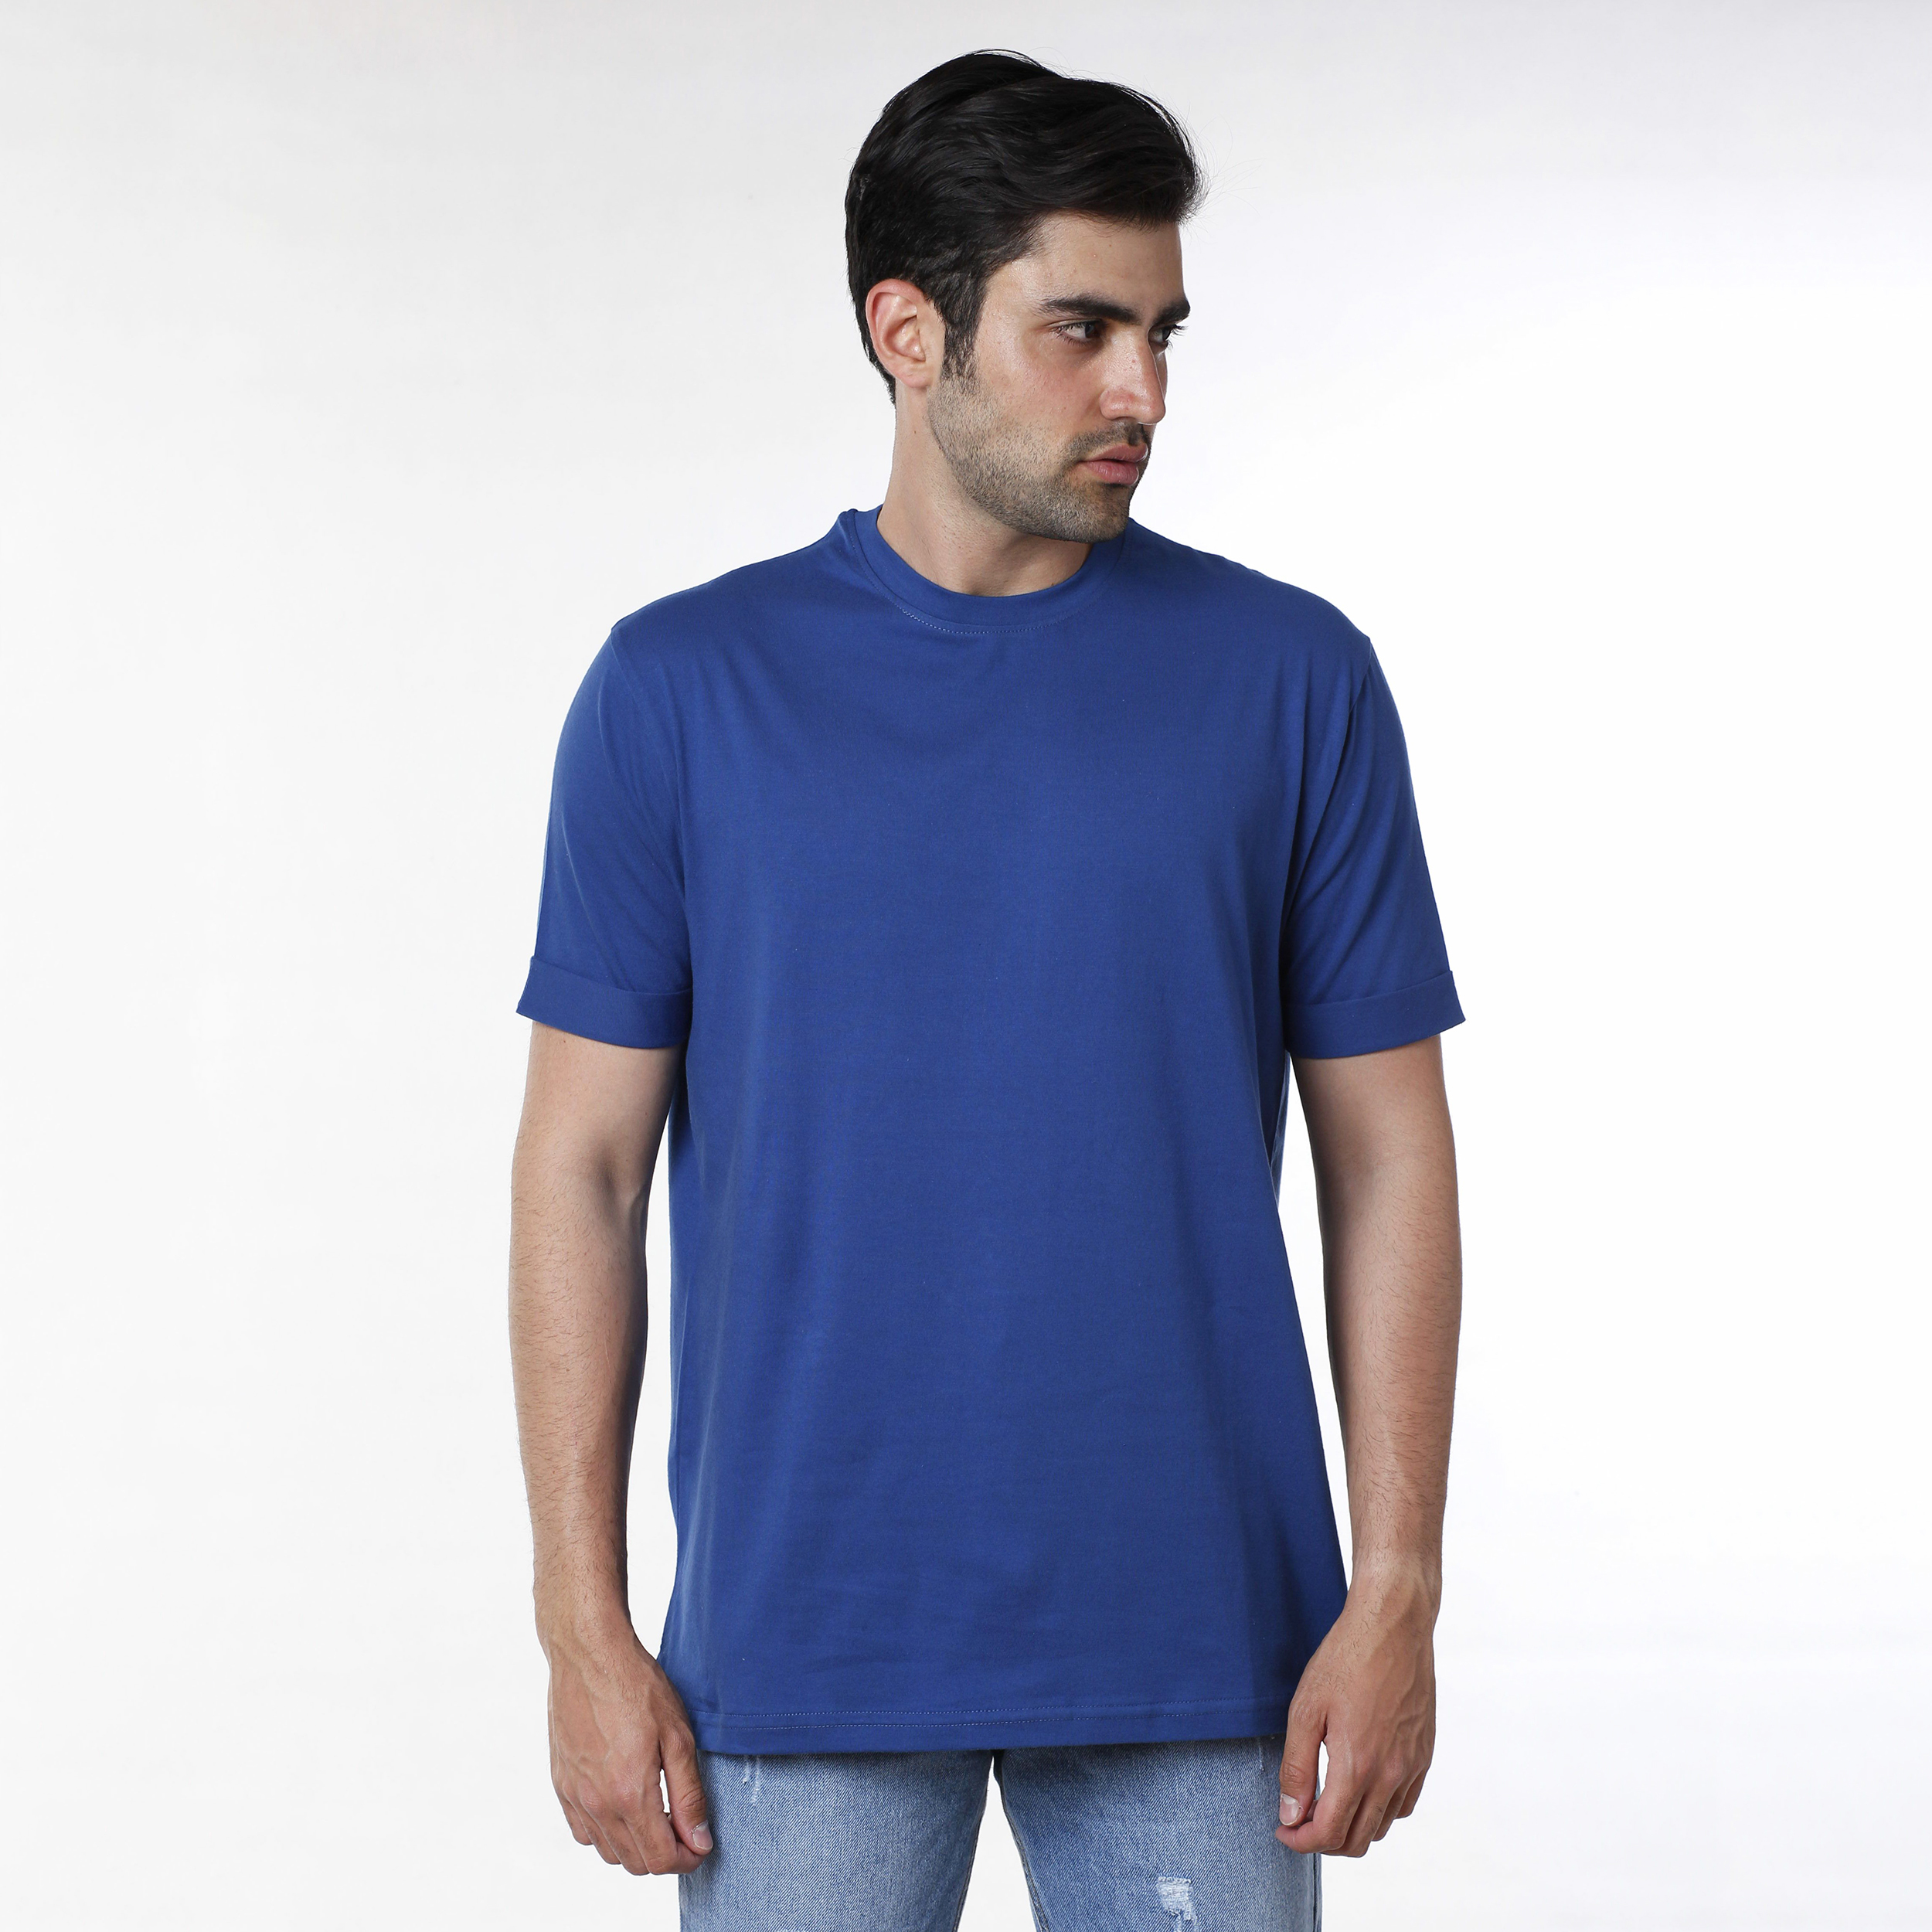 نکته خرید - قیمت روز تی شرت مردانه ایزی دو مدل 218114858 خرید